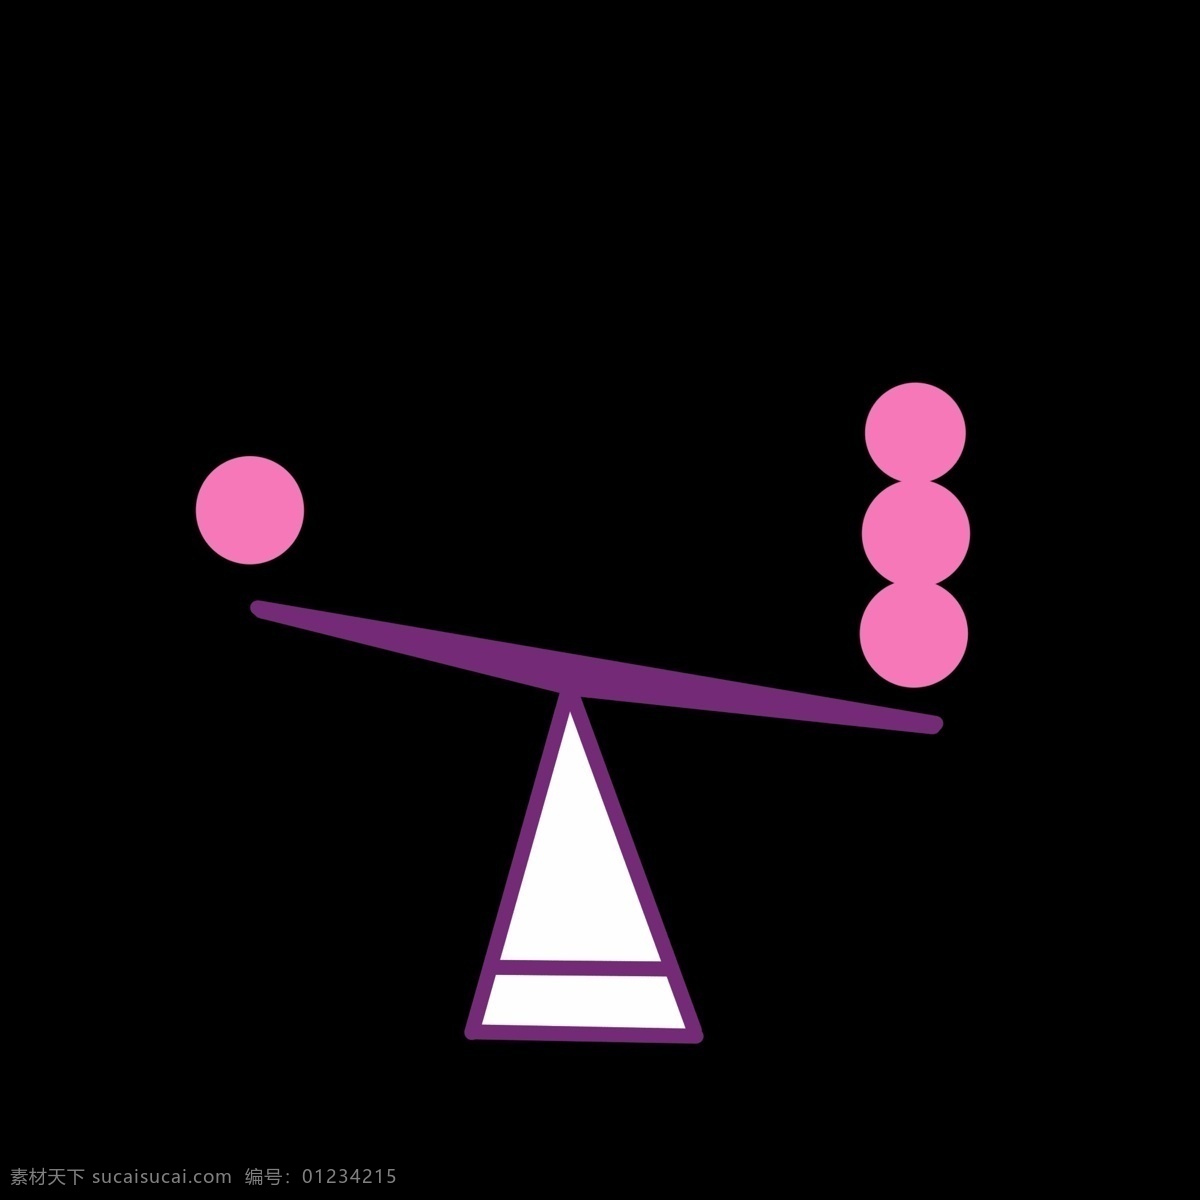 暖色 称重 平衡 矢量图 矢量 网页设计 版面设计 ppt使用 页面 卡通 简洁 简约 紫色 粉色